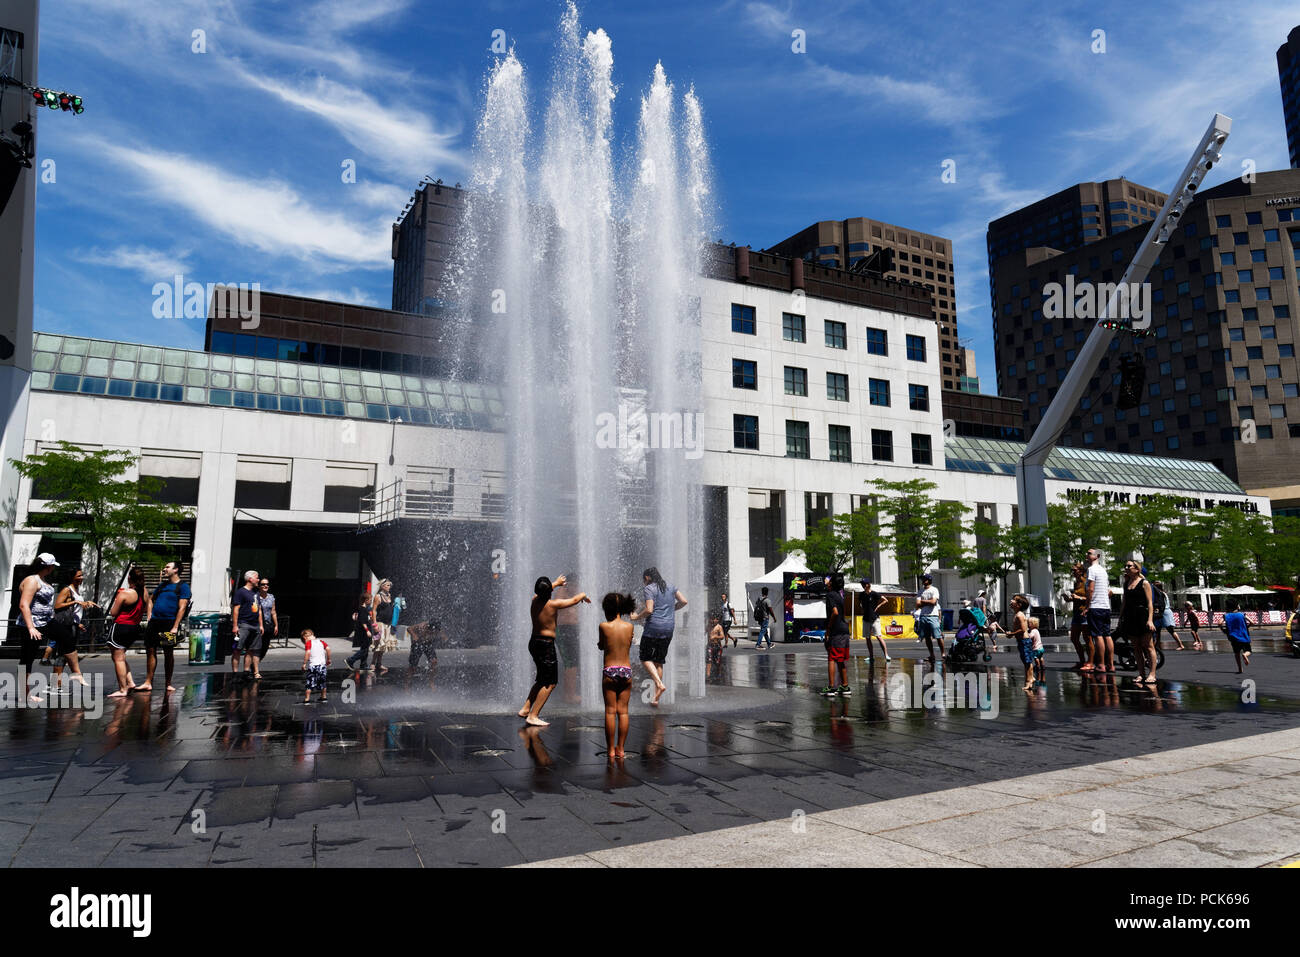 Rafraîchir les enfants jouant dans l'eau des fontaines dans la rue Jeanne Mance Montréal dans le quartier des divertissements. Prises au cours de la canicule de 2108. Banque D'Images